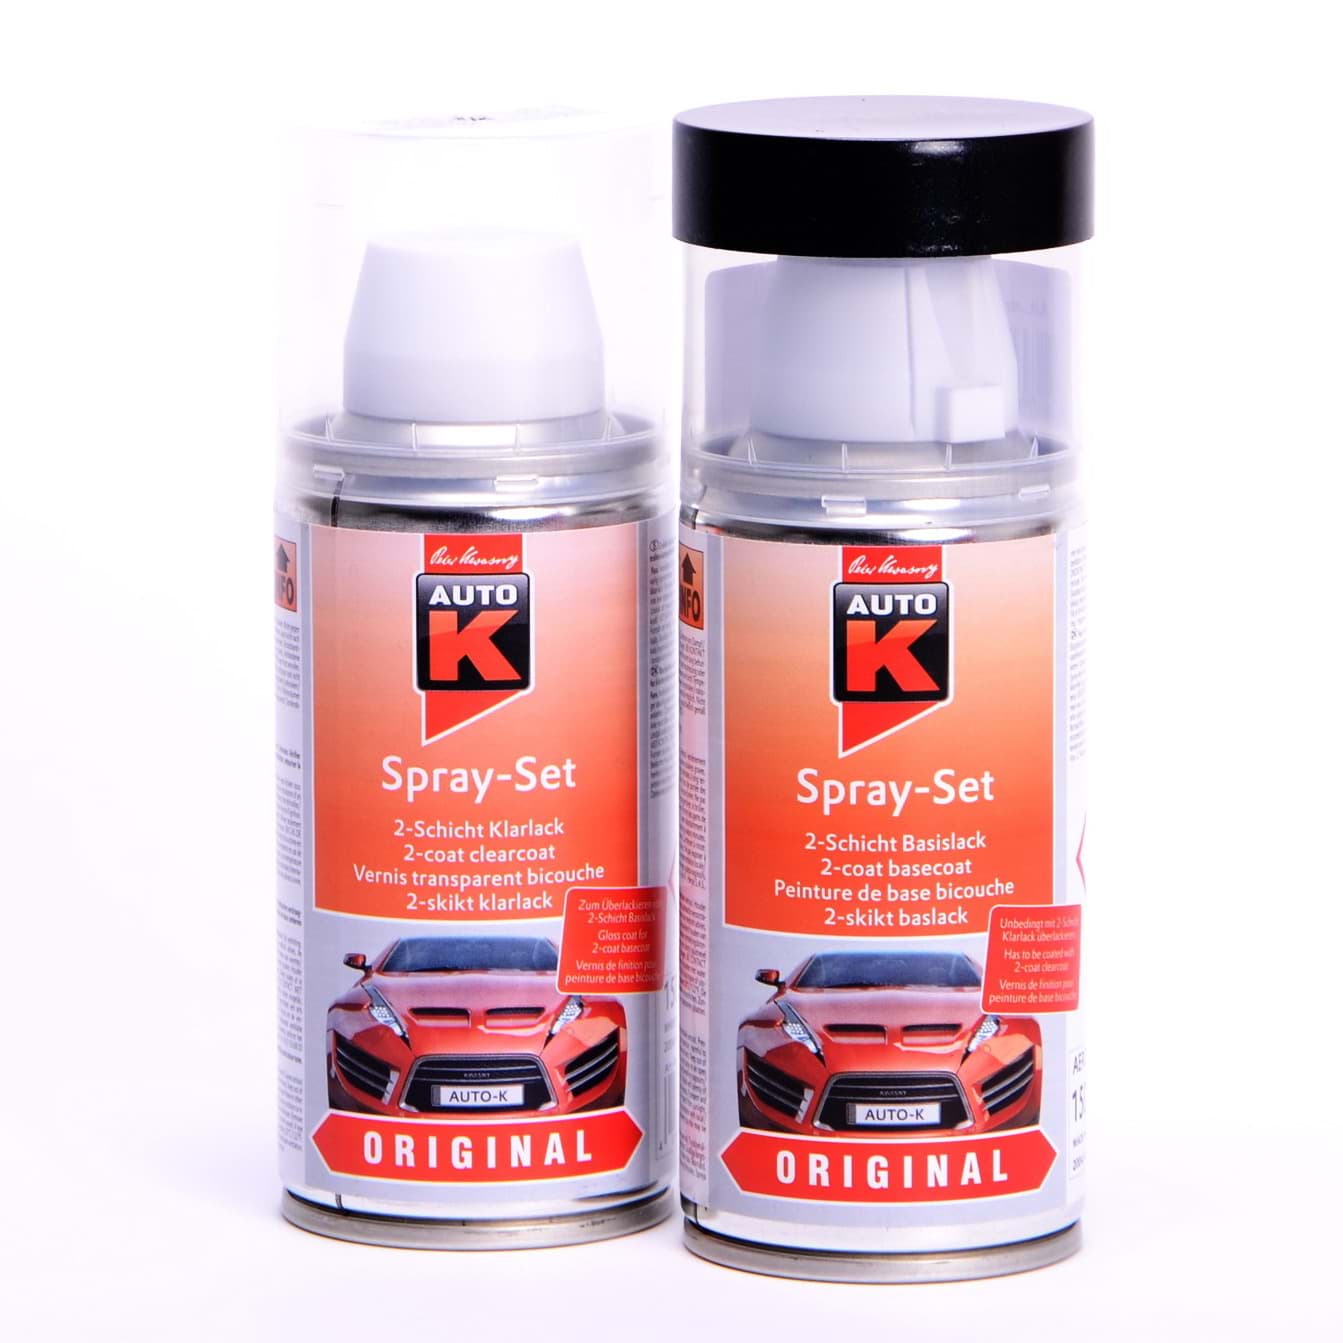 Afbeelding van Auto-K Spray-Set Autolack für Volkswagen, VW, Audi LX7W Eissilber metallic 20145